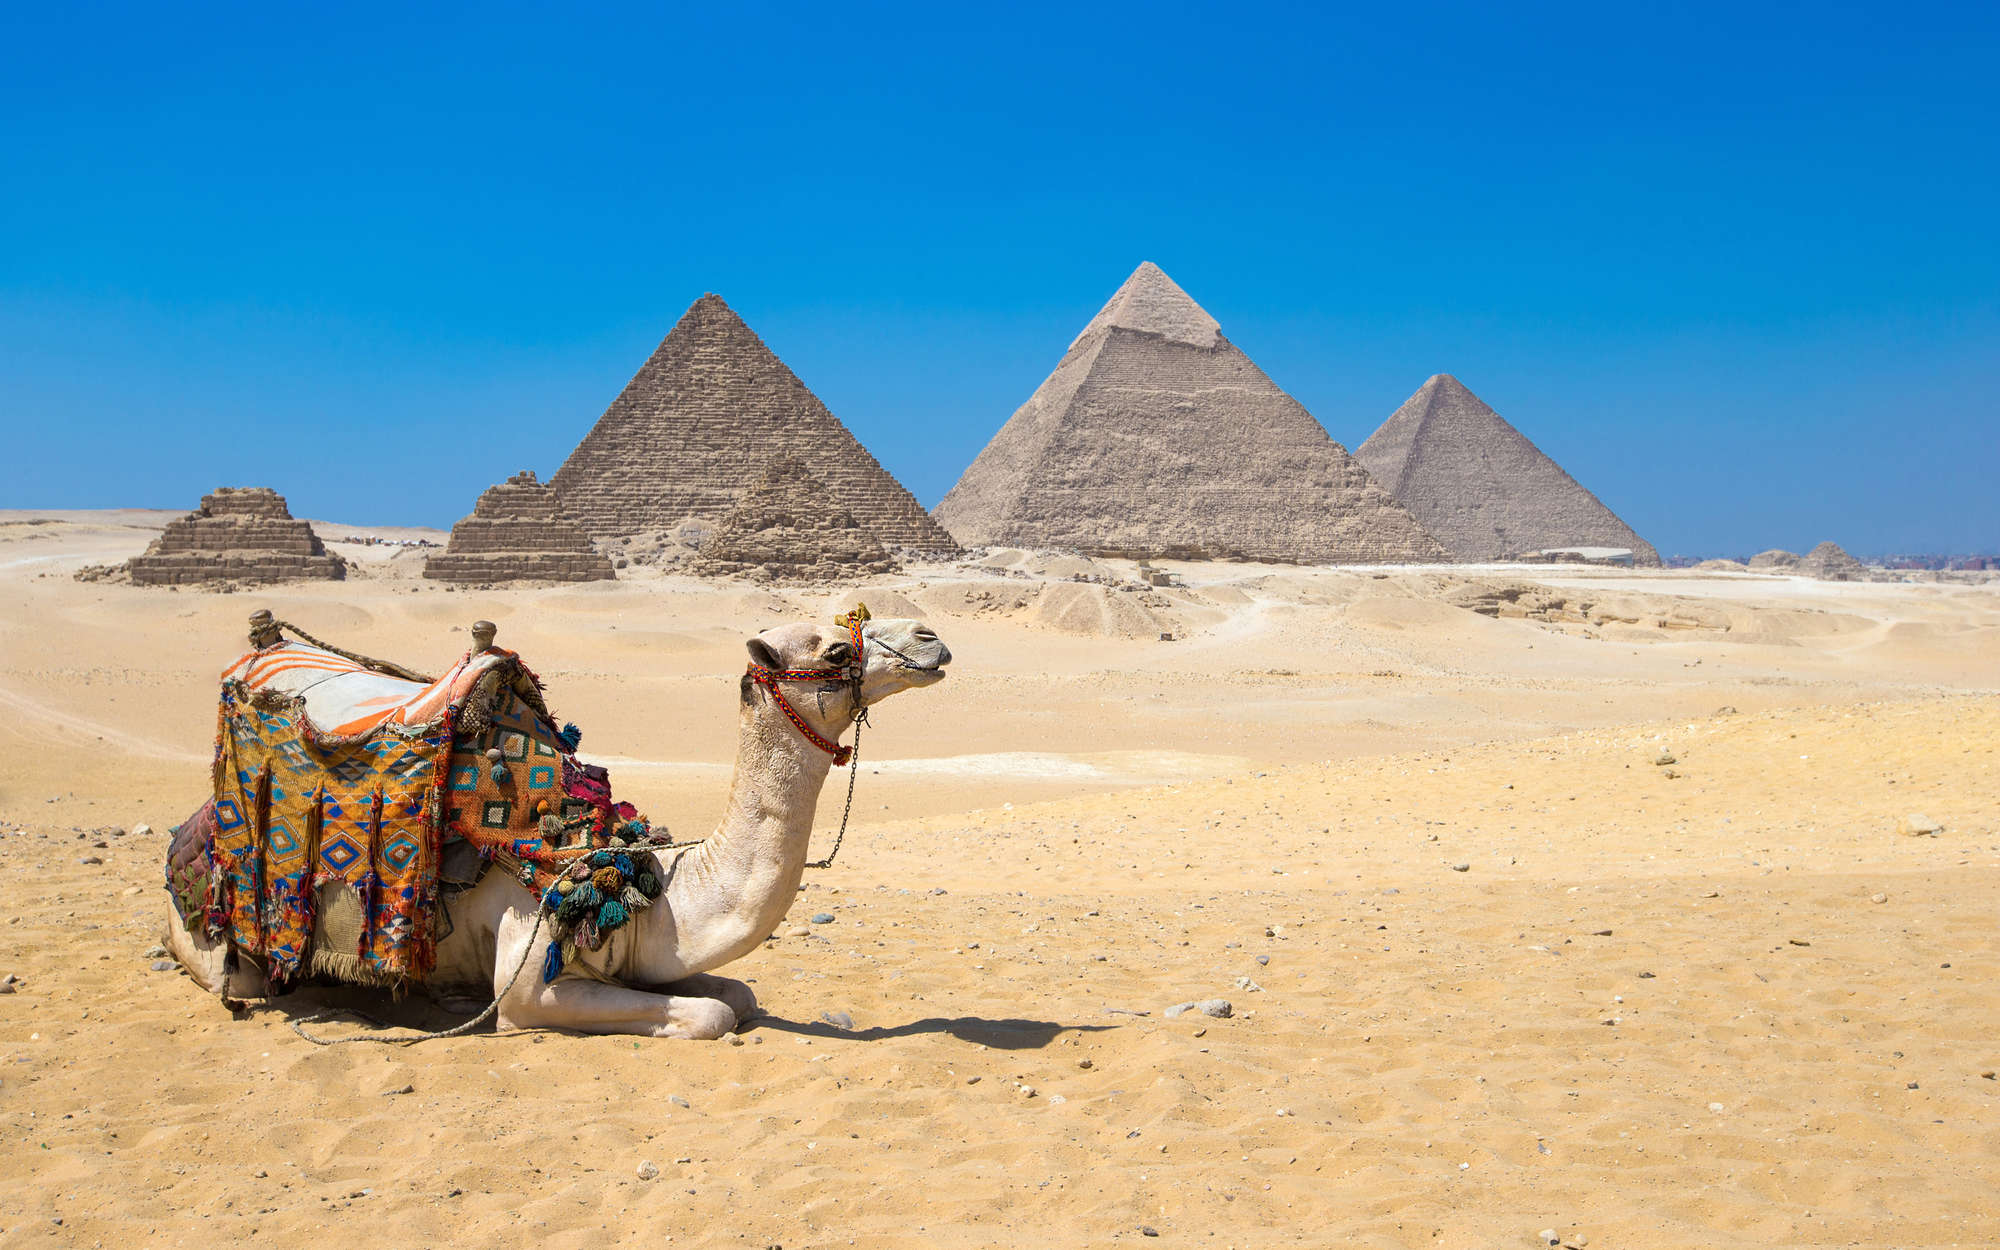             Fototapete Pyramiden von Gizeh mit Kamel – Premium Glattvlies
        